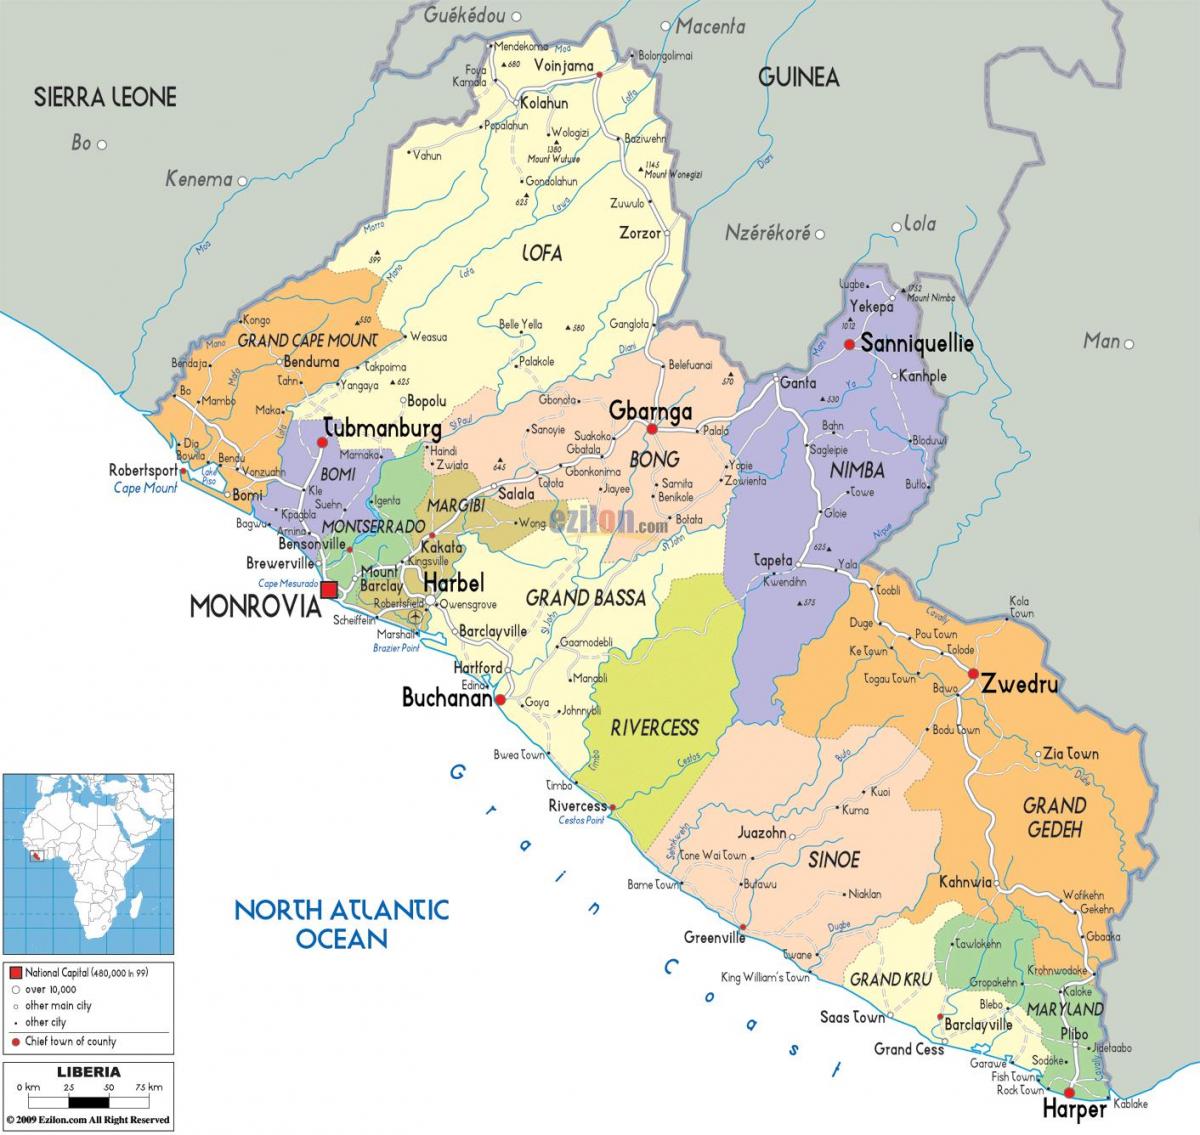 die politieke kaart van Liberië